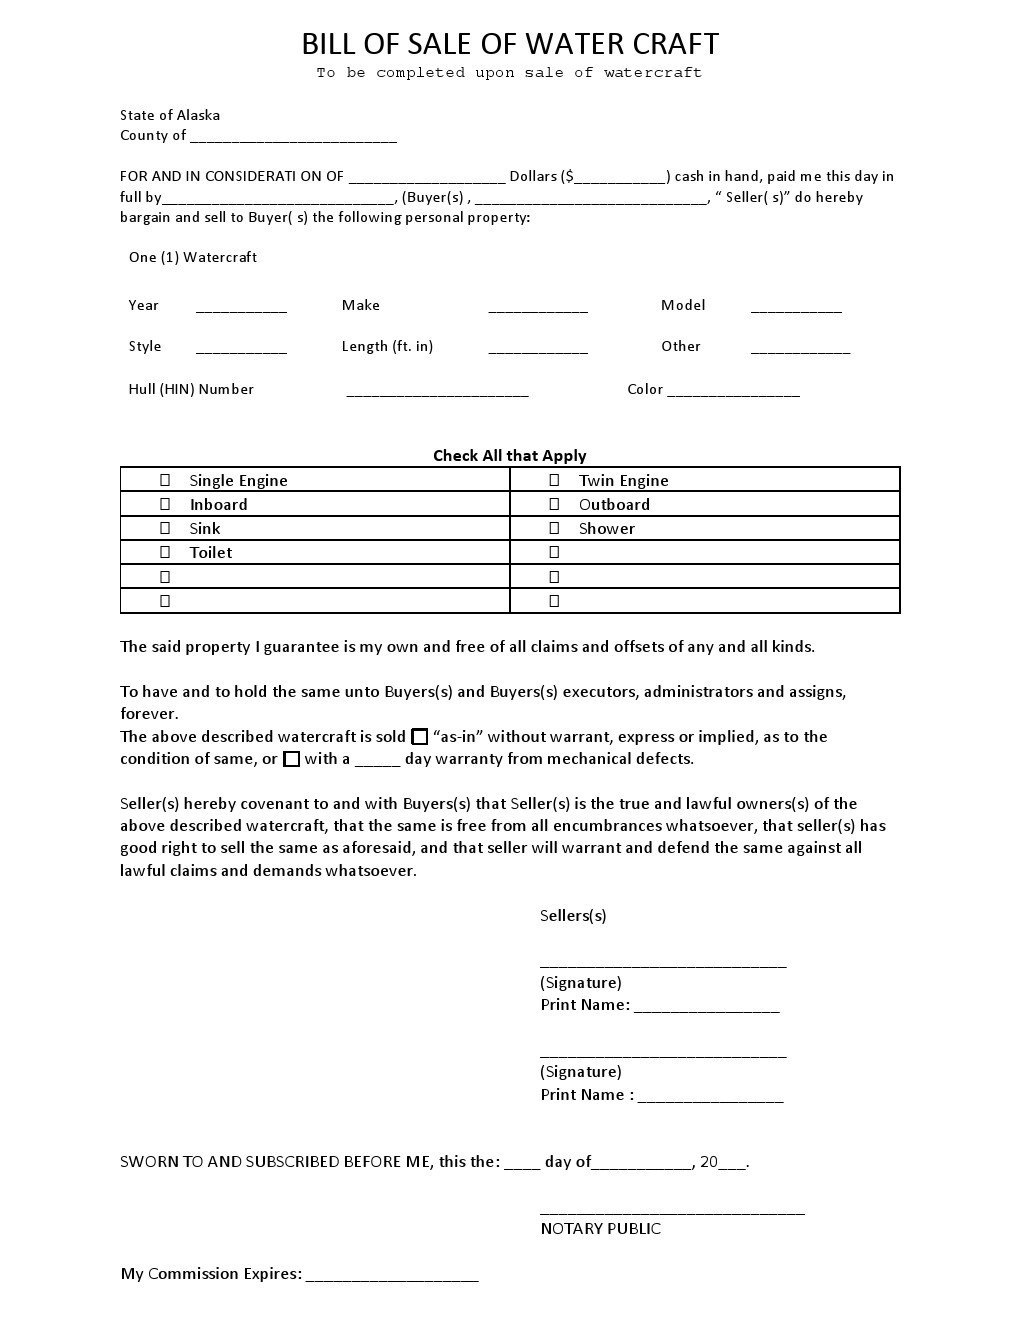 Free Alaska Watercraft Bill of Sale Form Download PDF